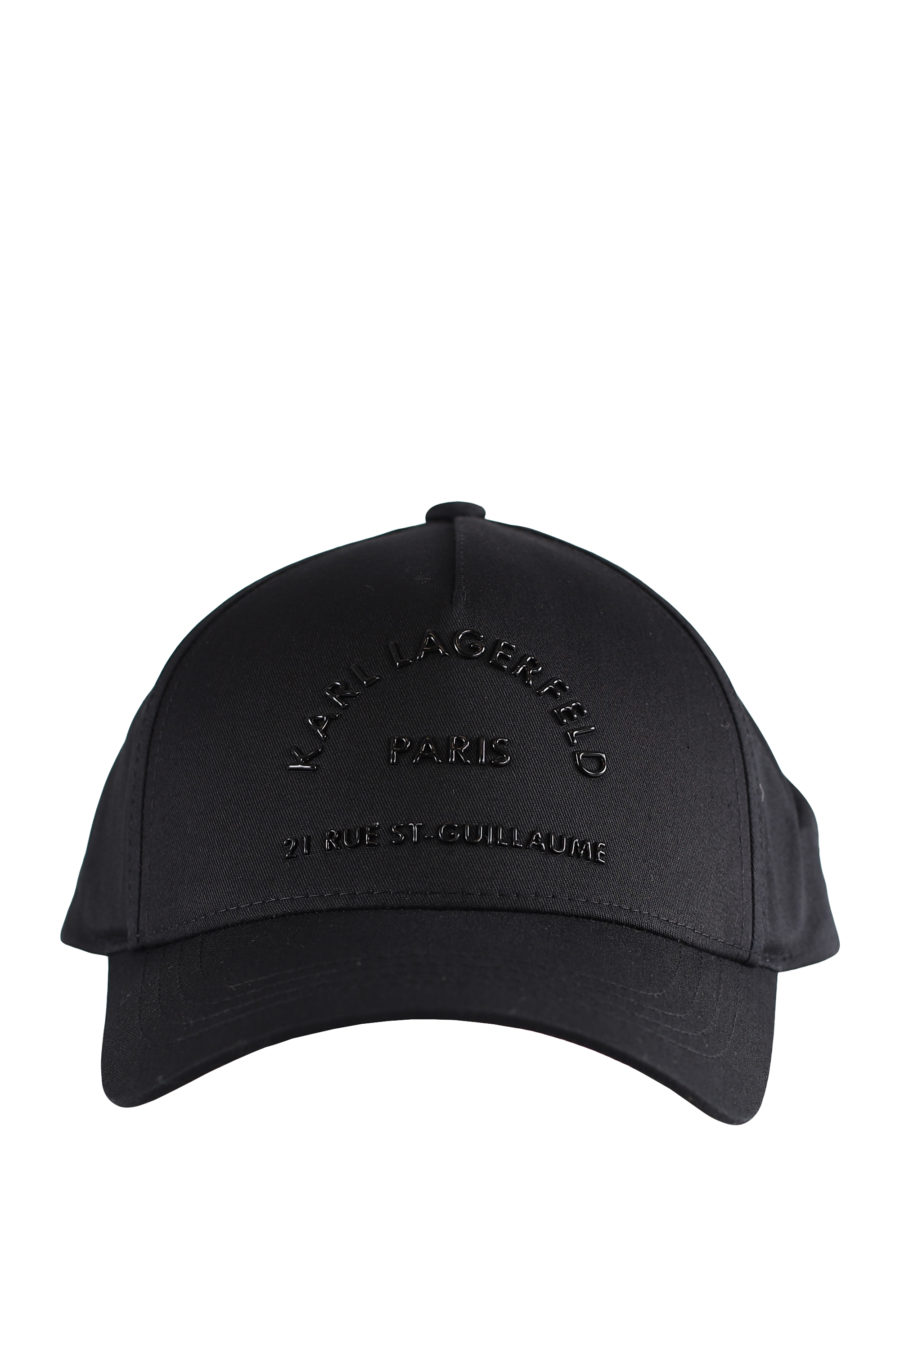 Gorra negra con logotipo negro en relieve - IMG 9598